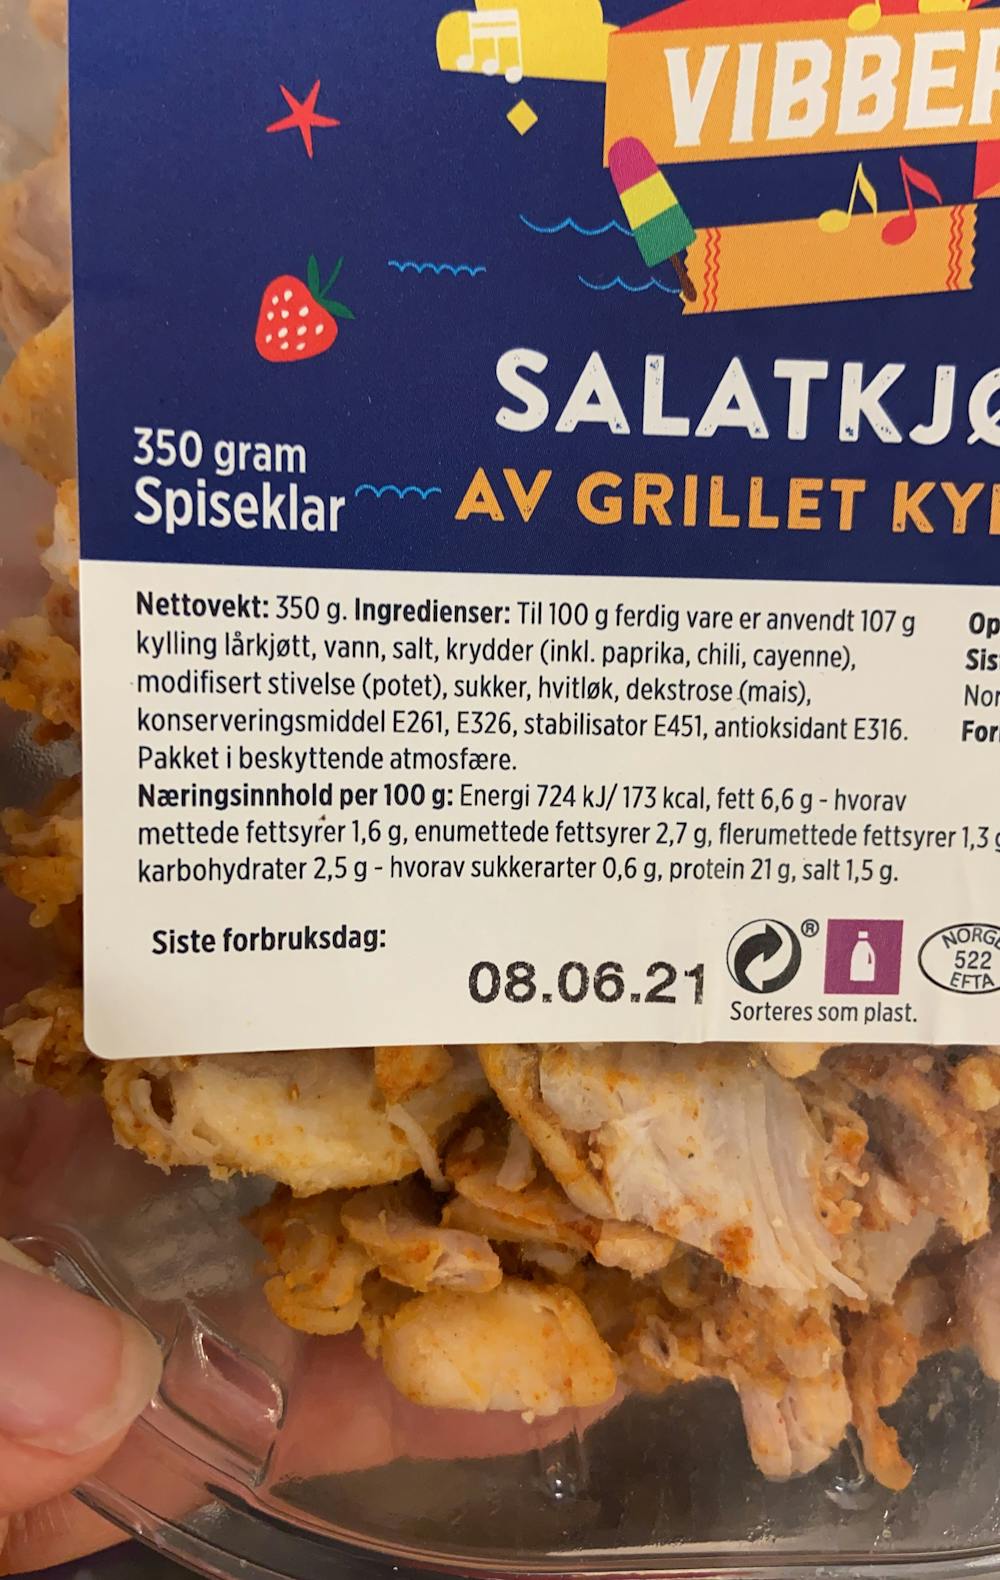 Ingrediensliste - Salatkjøtt av grillet kylling, Prior